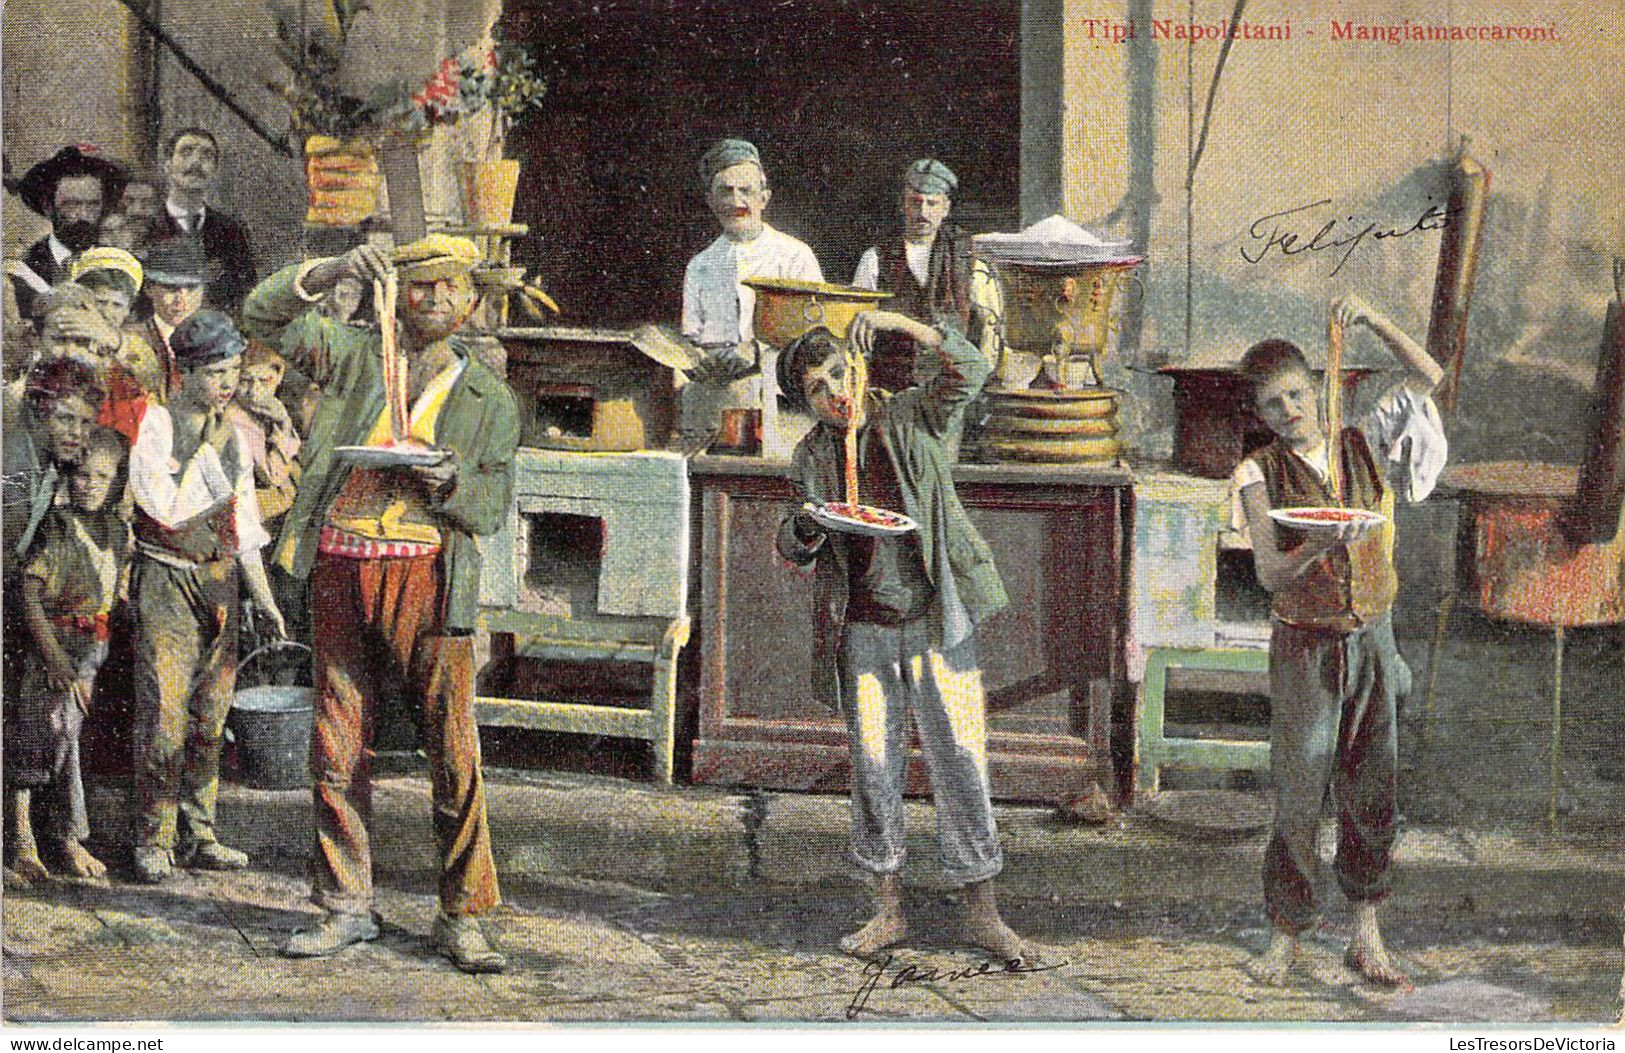 Italie - Tipi Napoletania - Mangiamaccaoni - Colorisé - Carte Postale Ancienne - Napoli (Neapel)